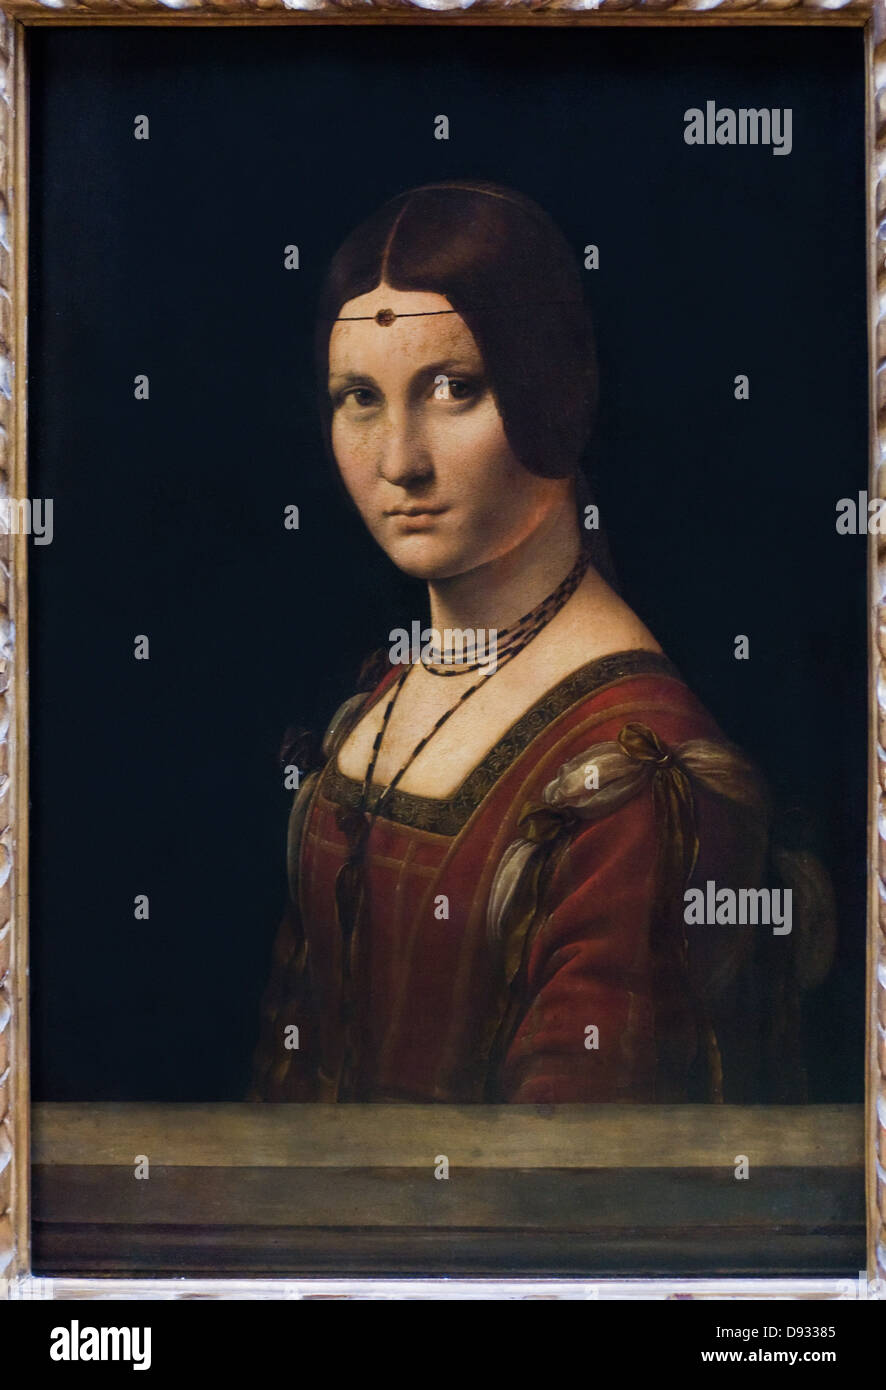 Léonardo da Vinci Portrait de femme aka La Belle Ferronnière autour de 1495 - 1499 huile sur toile école italienne Banque D'Images